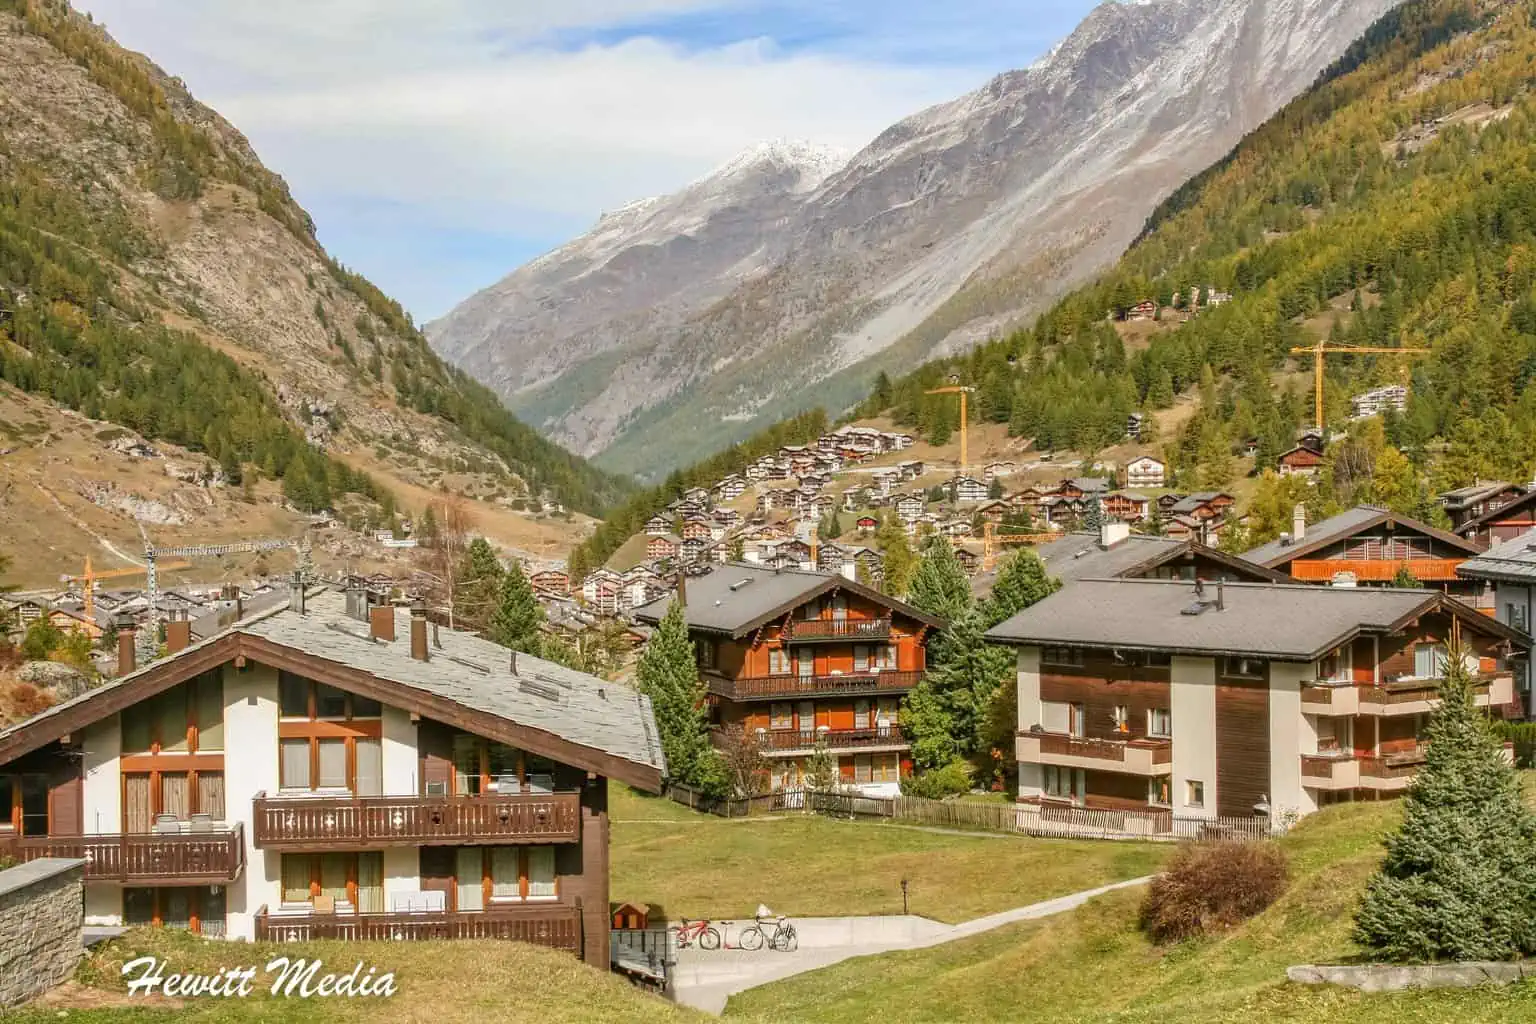 Europe's Top Destinations - Zermatt